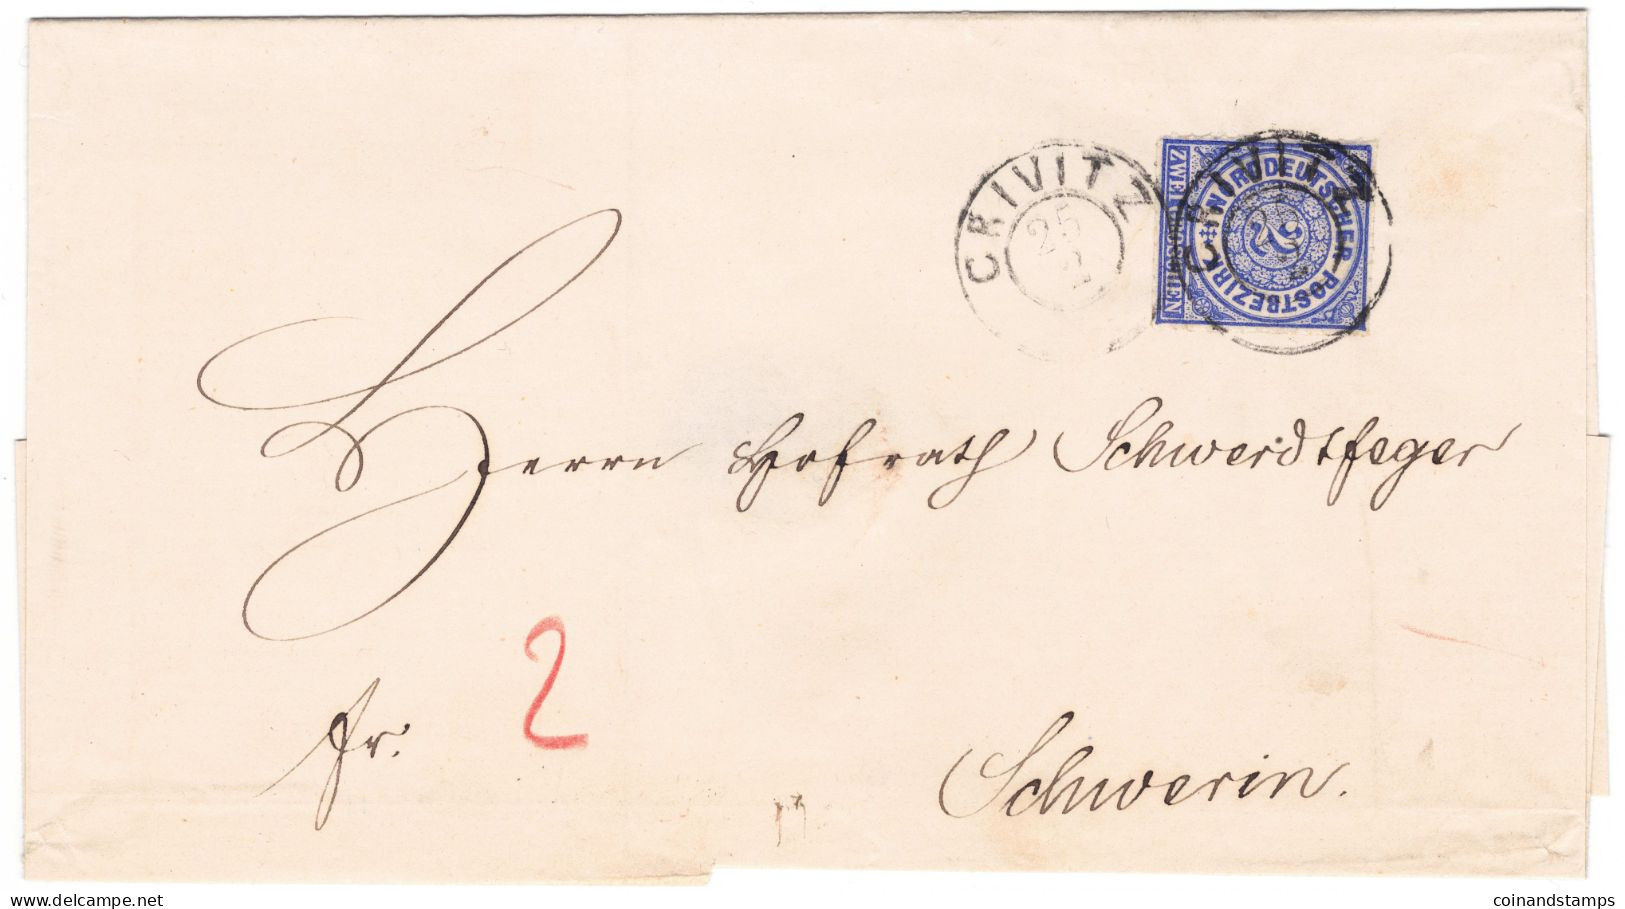 NDP Brief Mit Mi.-Nr.5 Als EF. Crivitz 25.2.1868 An Herrn Schwedtfeger Nach Schwerin, Feinst - Storia Postale